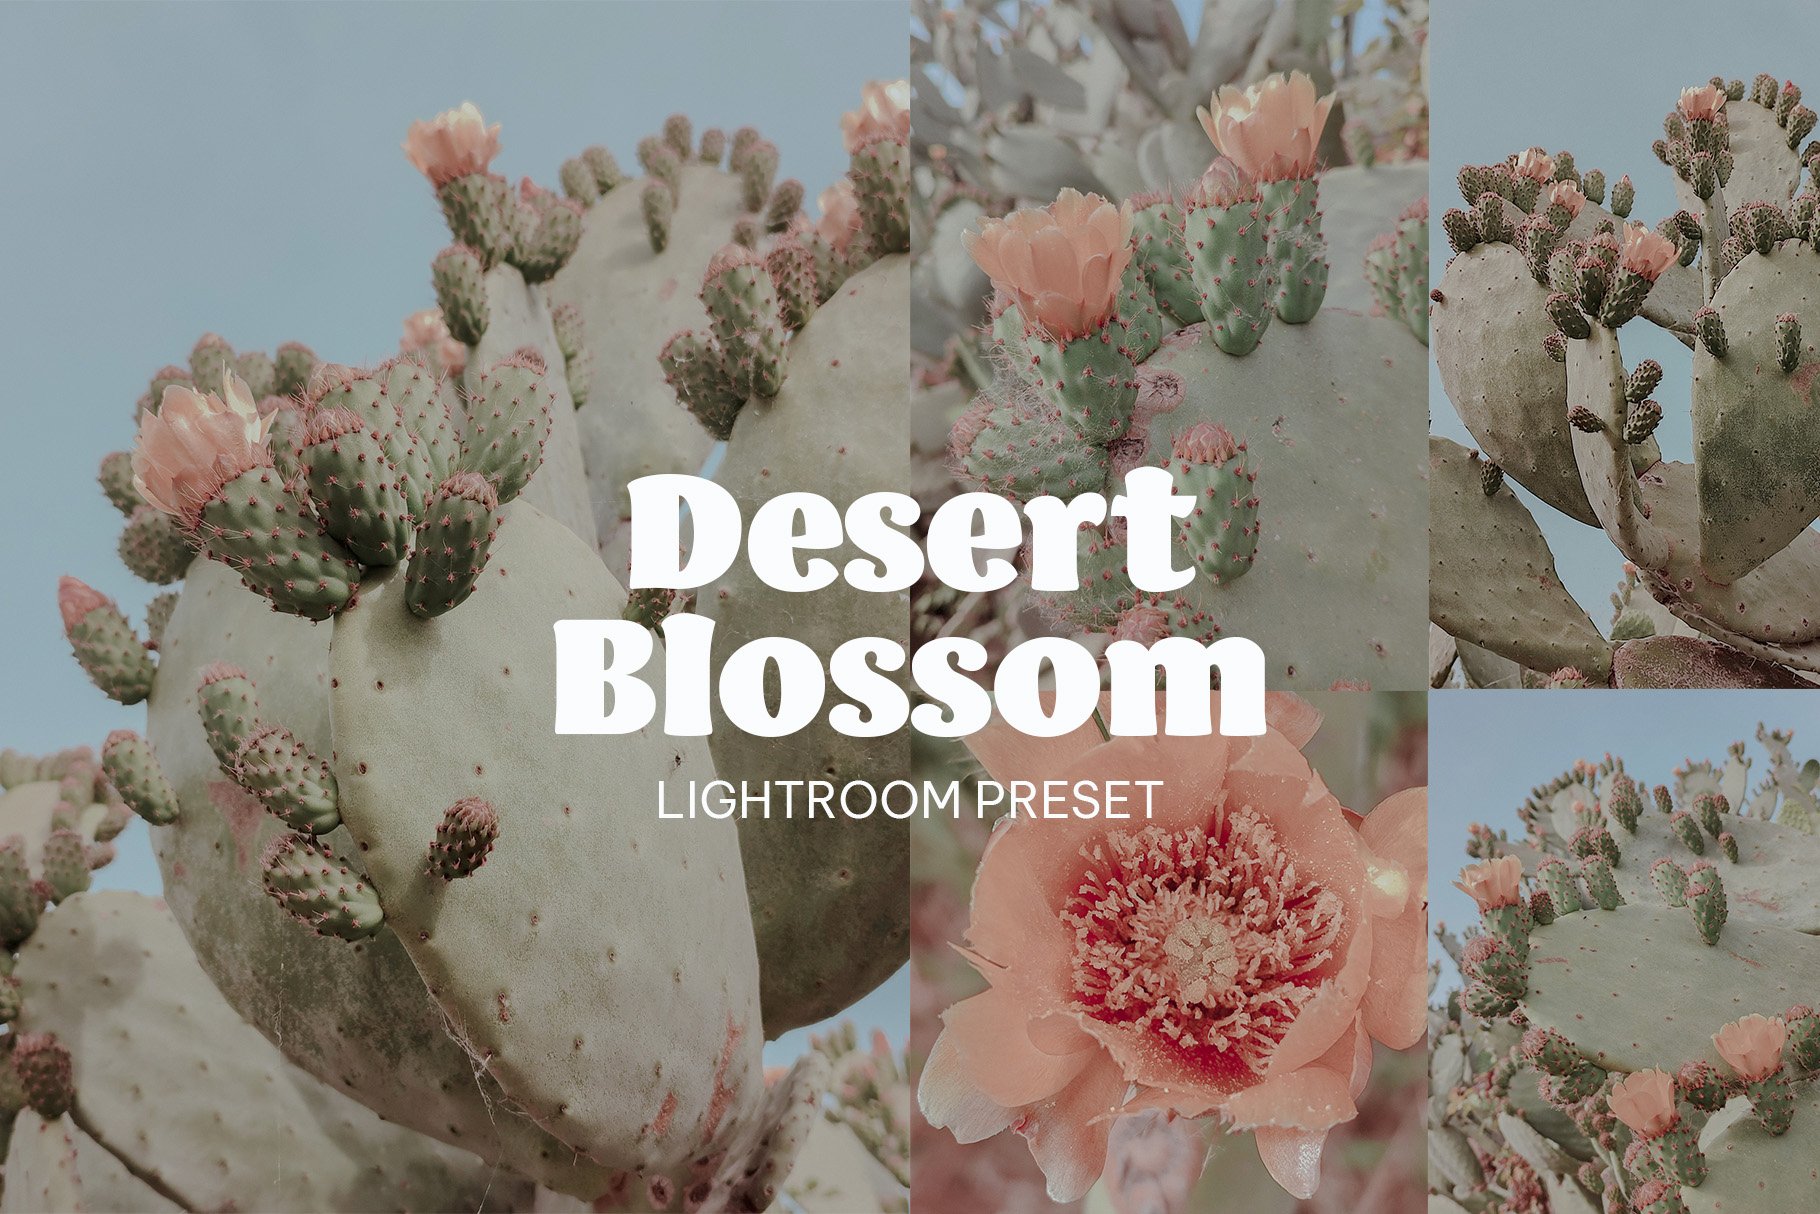 Desert Blossom - Lightroom Presetcover image.